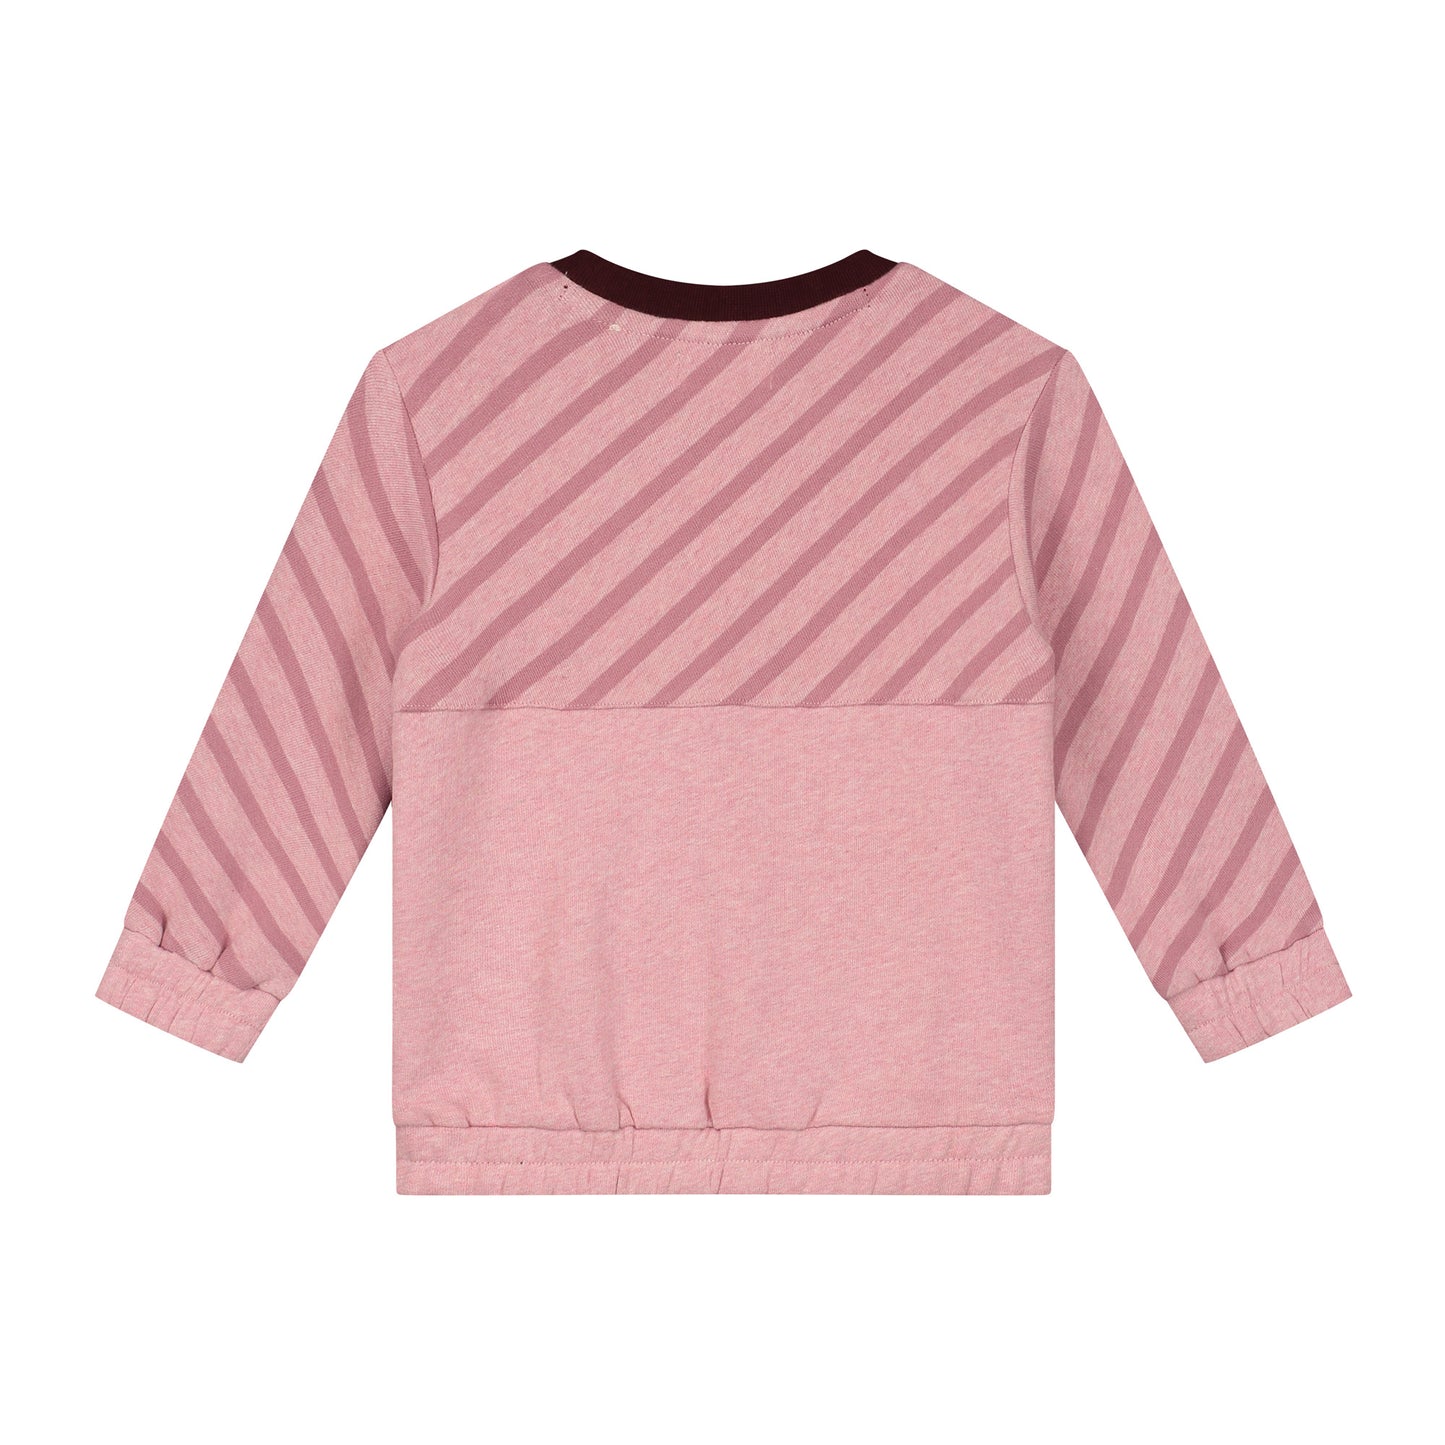 Sweatshirt mit Farbblock in Rosa und Braun